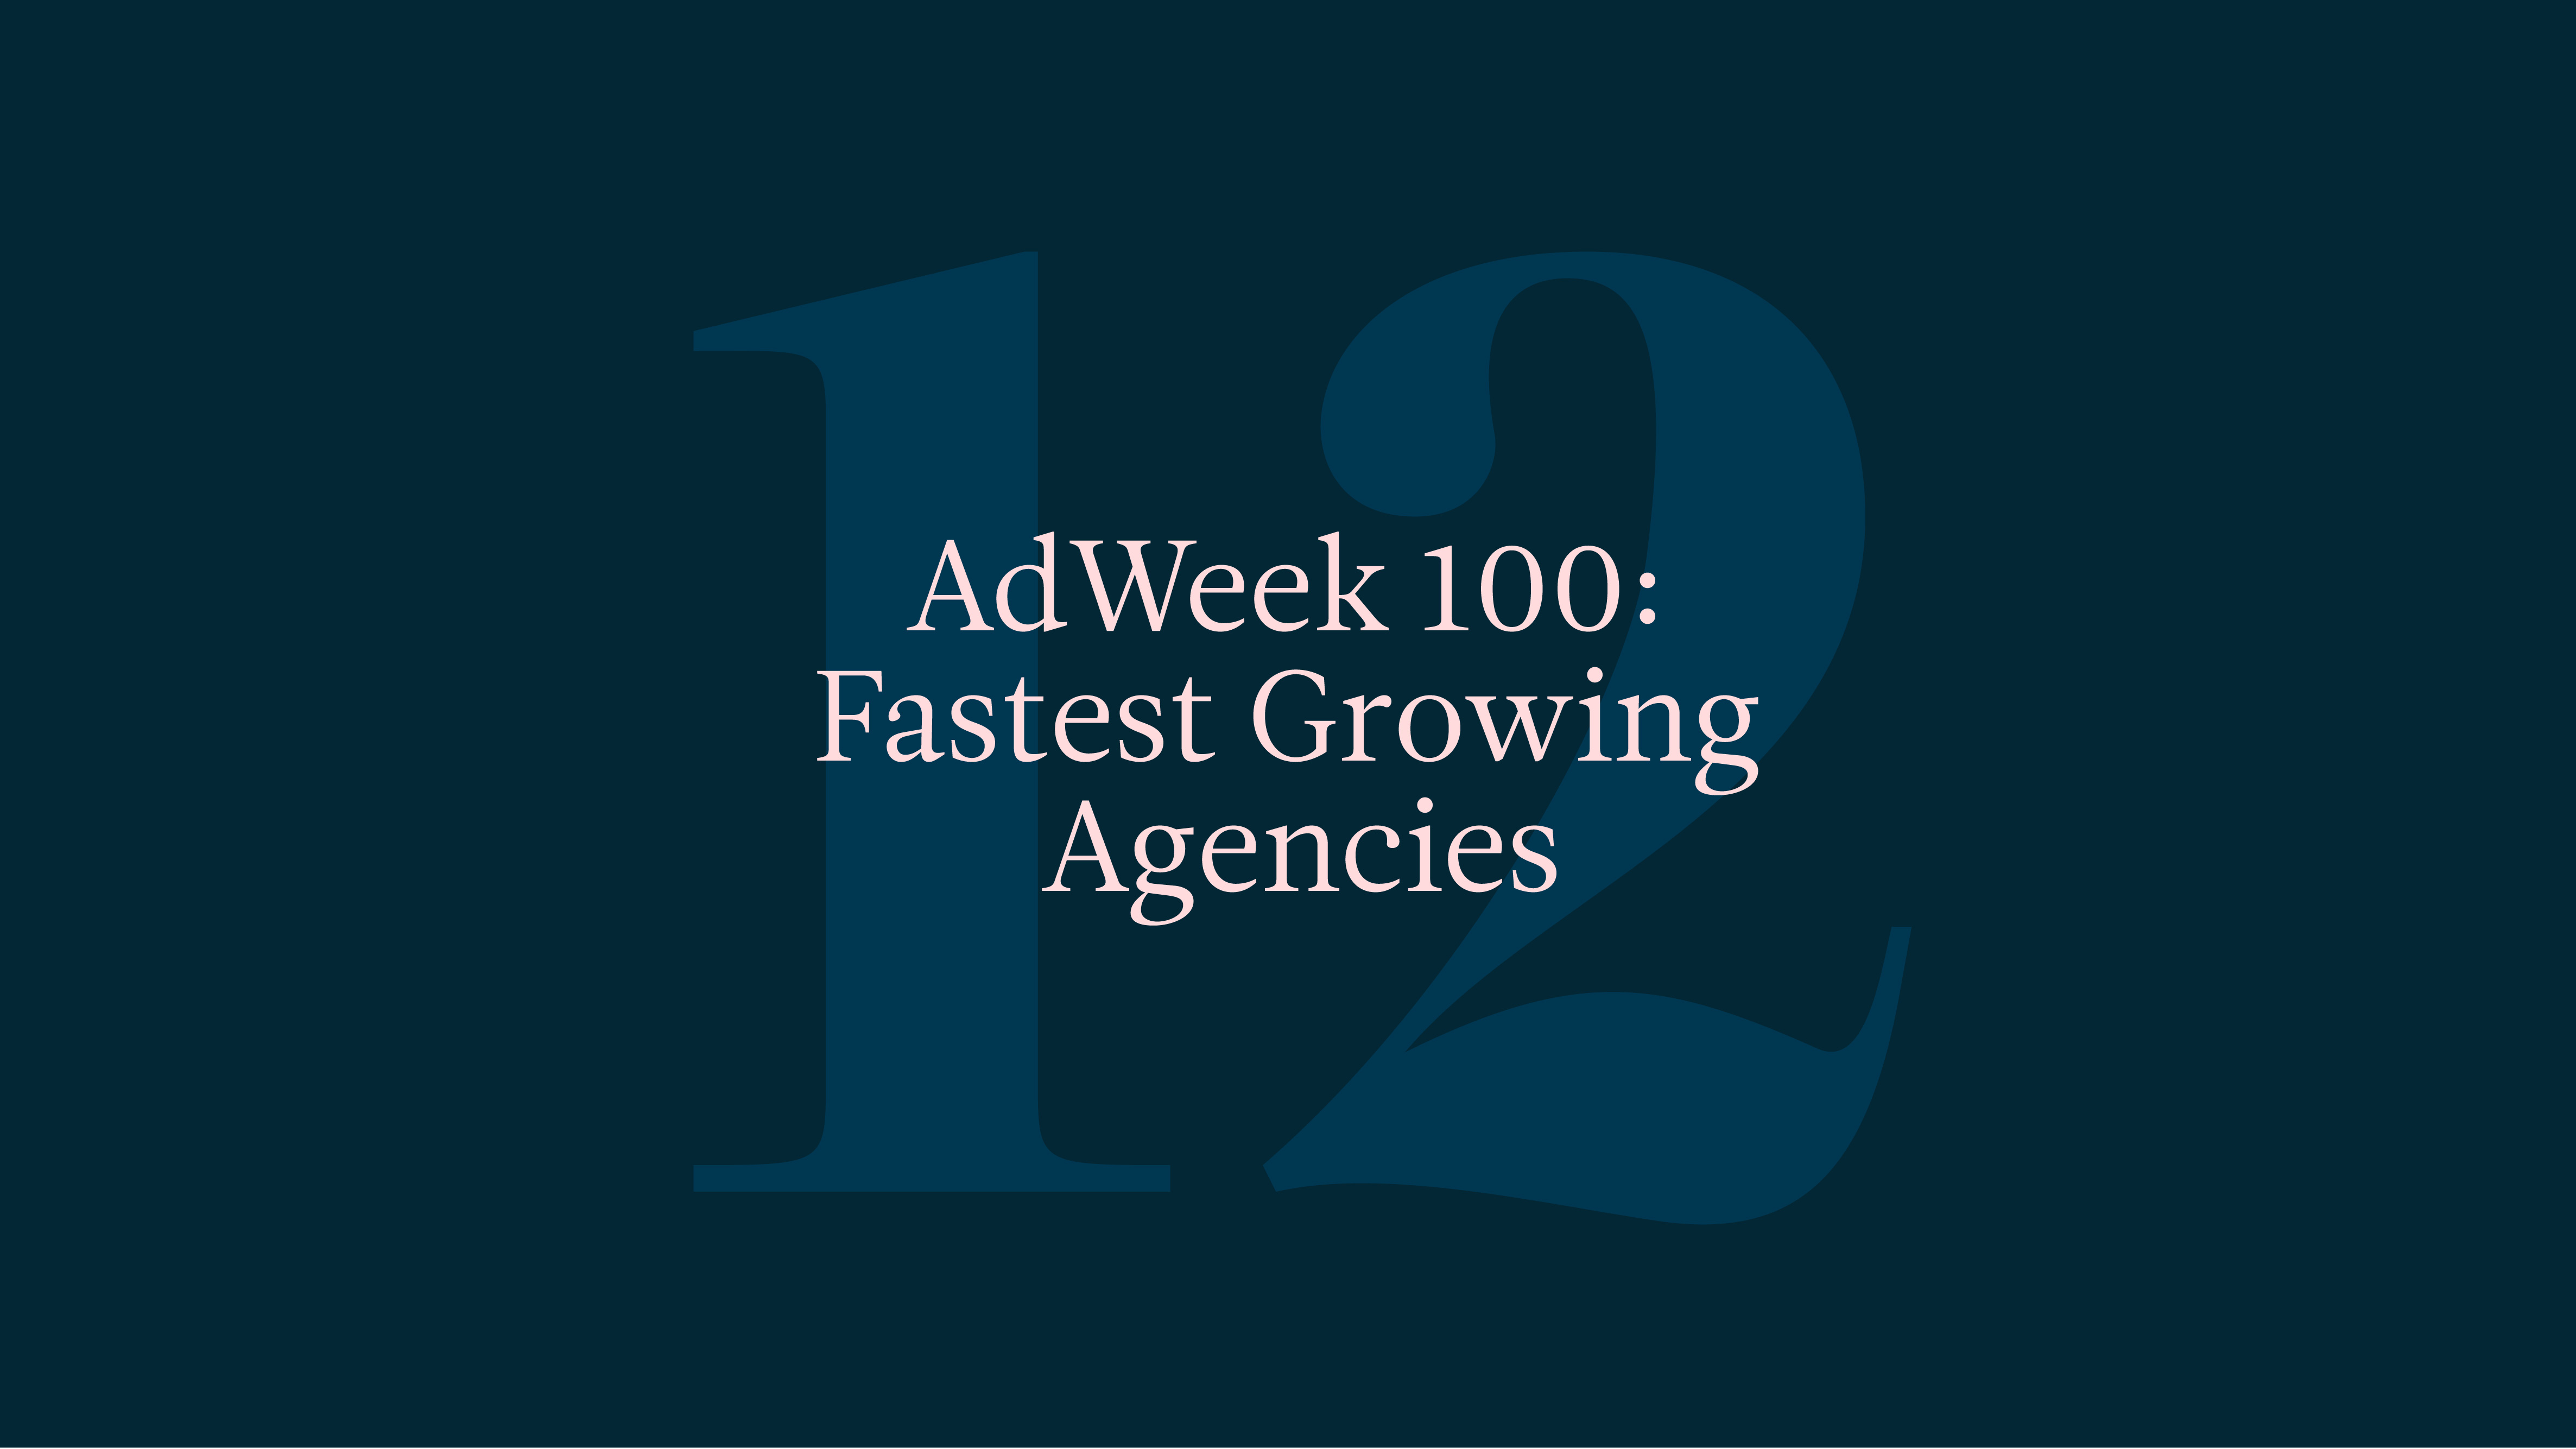 Social Studies Named One of Adweek’s “Fastest Growing Agencies”